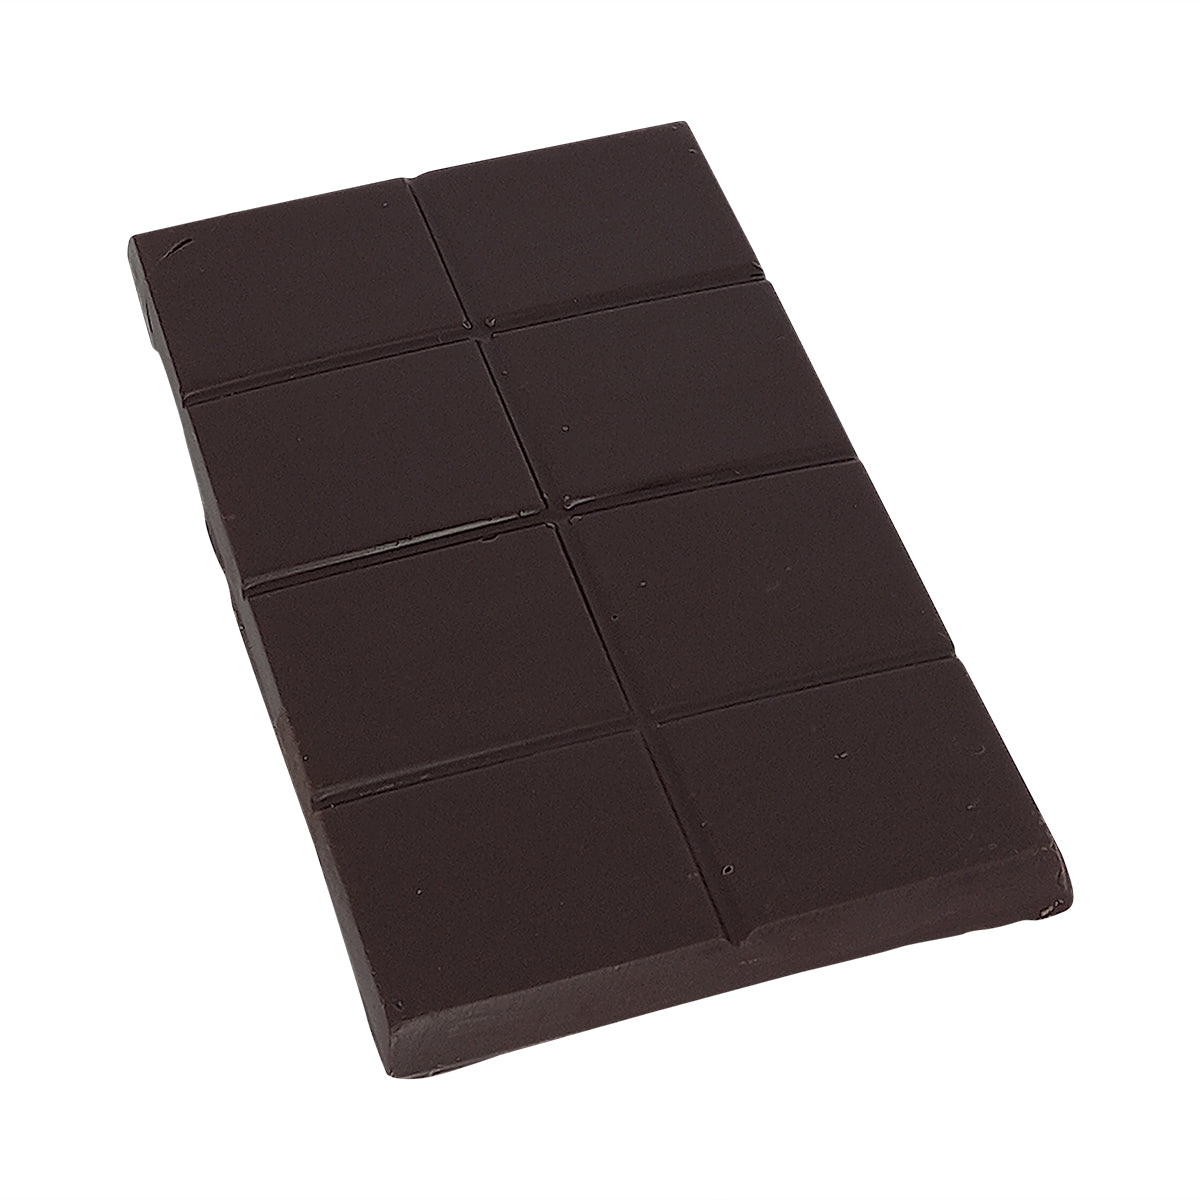 55% Bio-Schokolade mit Weißzucker gesüßt - Riegel